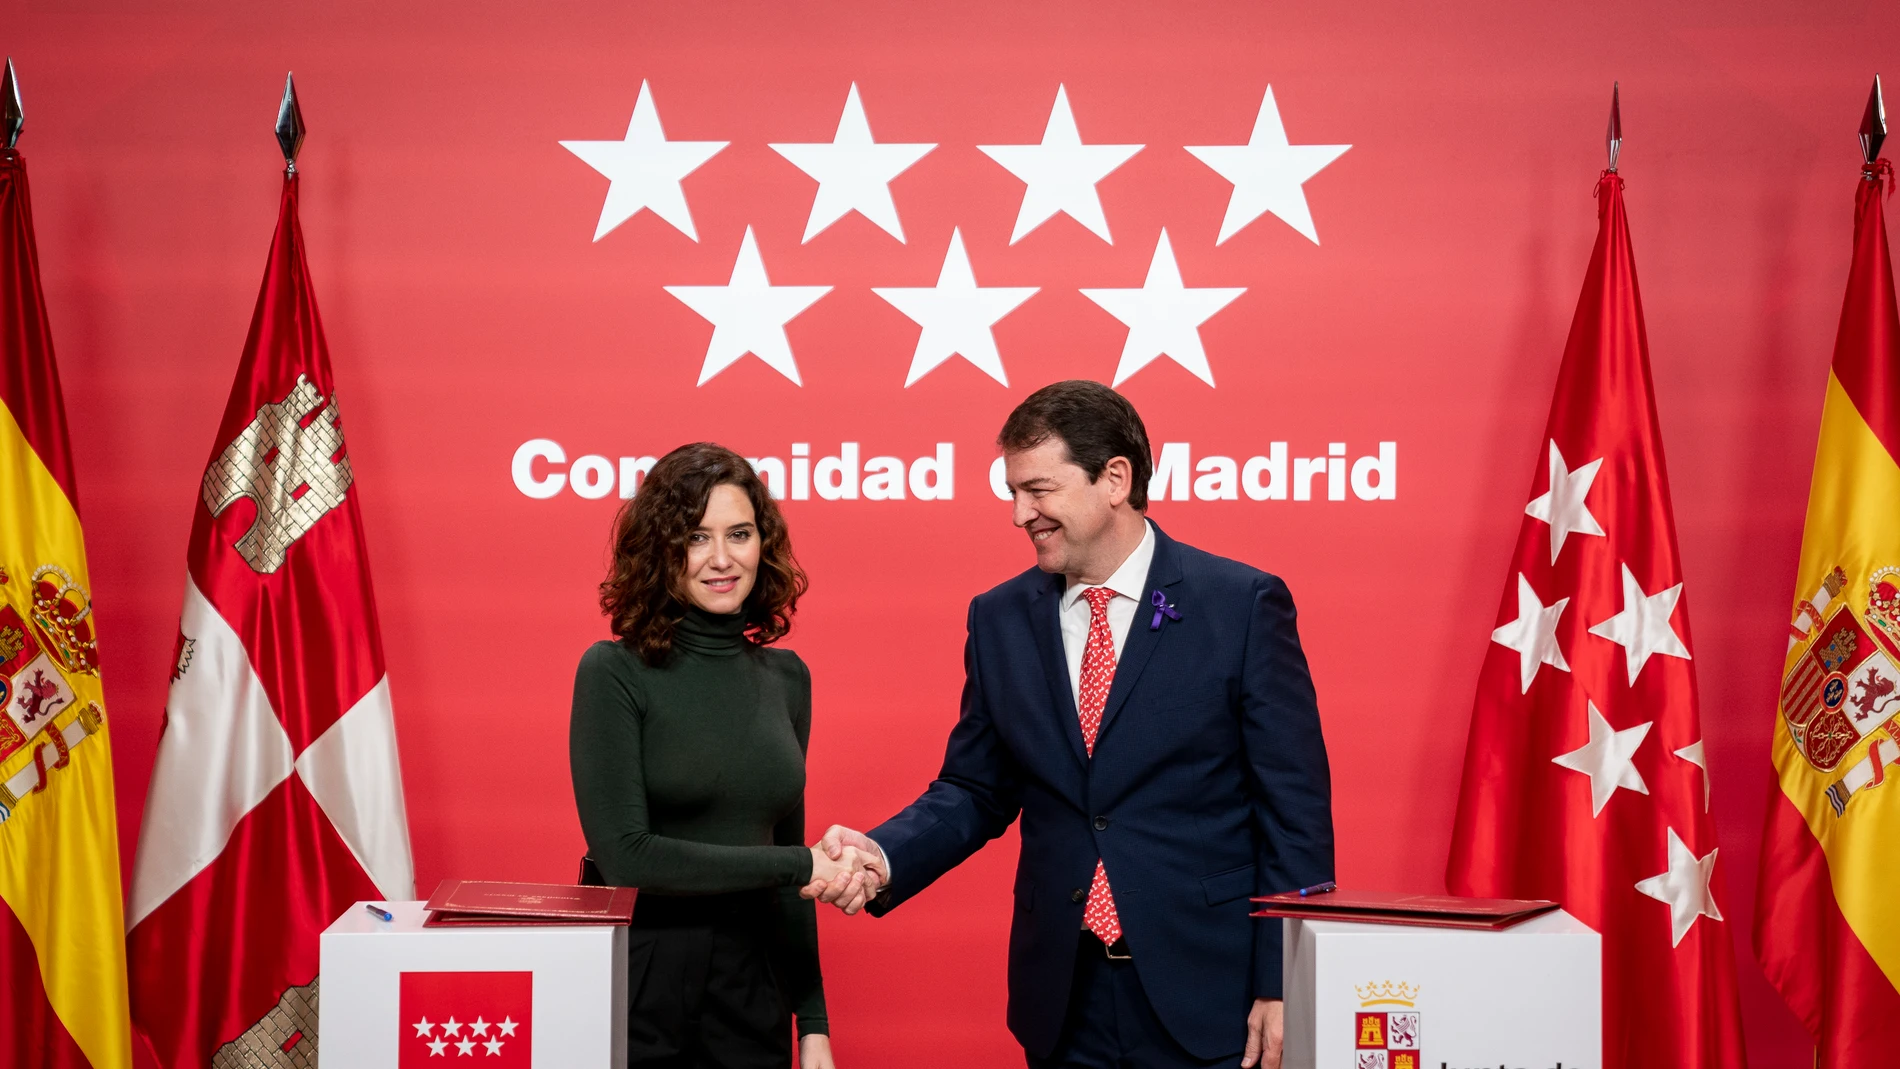 La presidenta de la Comunidad de Madrid, Isabel Díaz Ayuso, y el presidente de la Junta de Castilla y León, Alfonso Fernández Mañueco